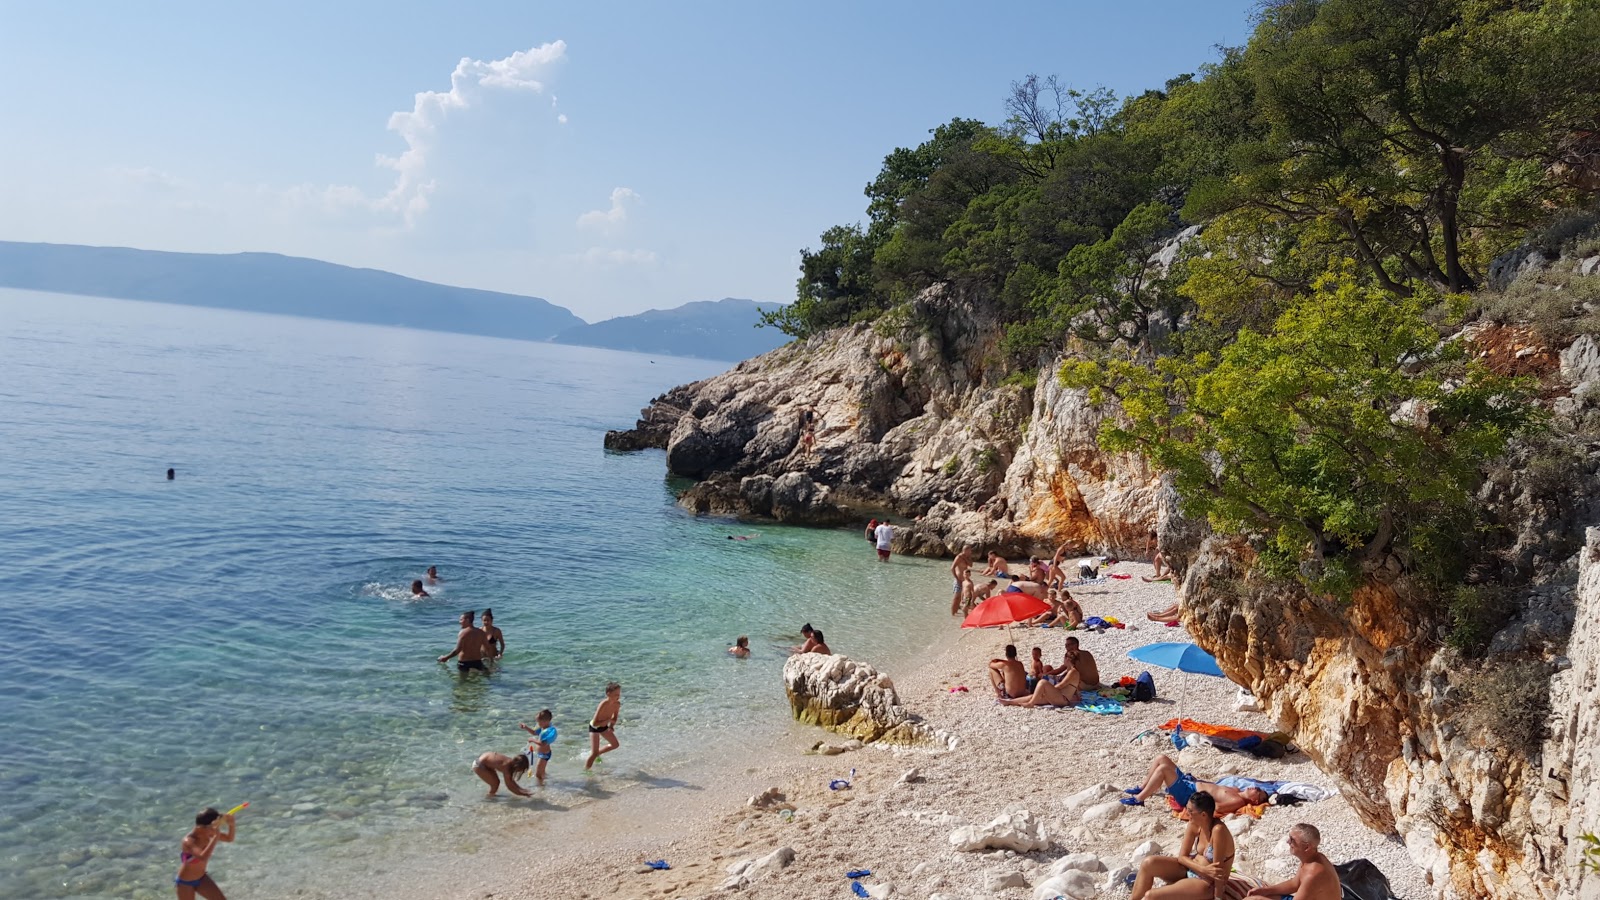 Φωτογραφία του Dragozetici beach με μικρός κόλπος